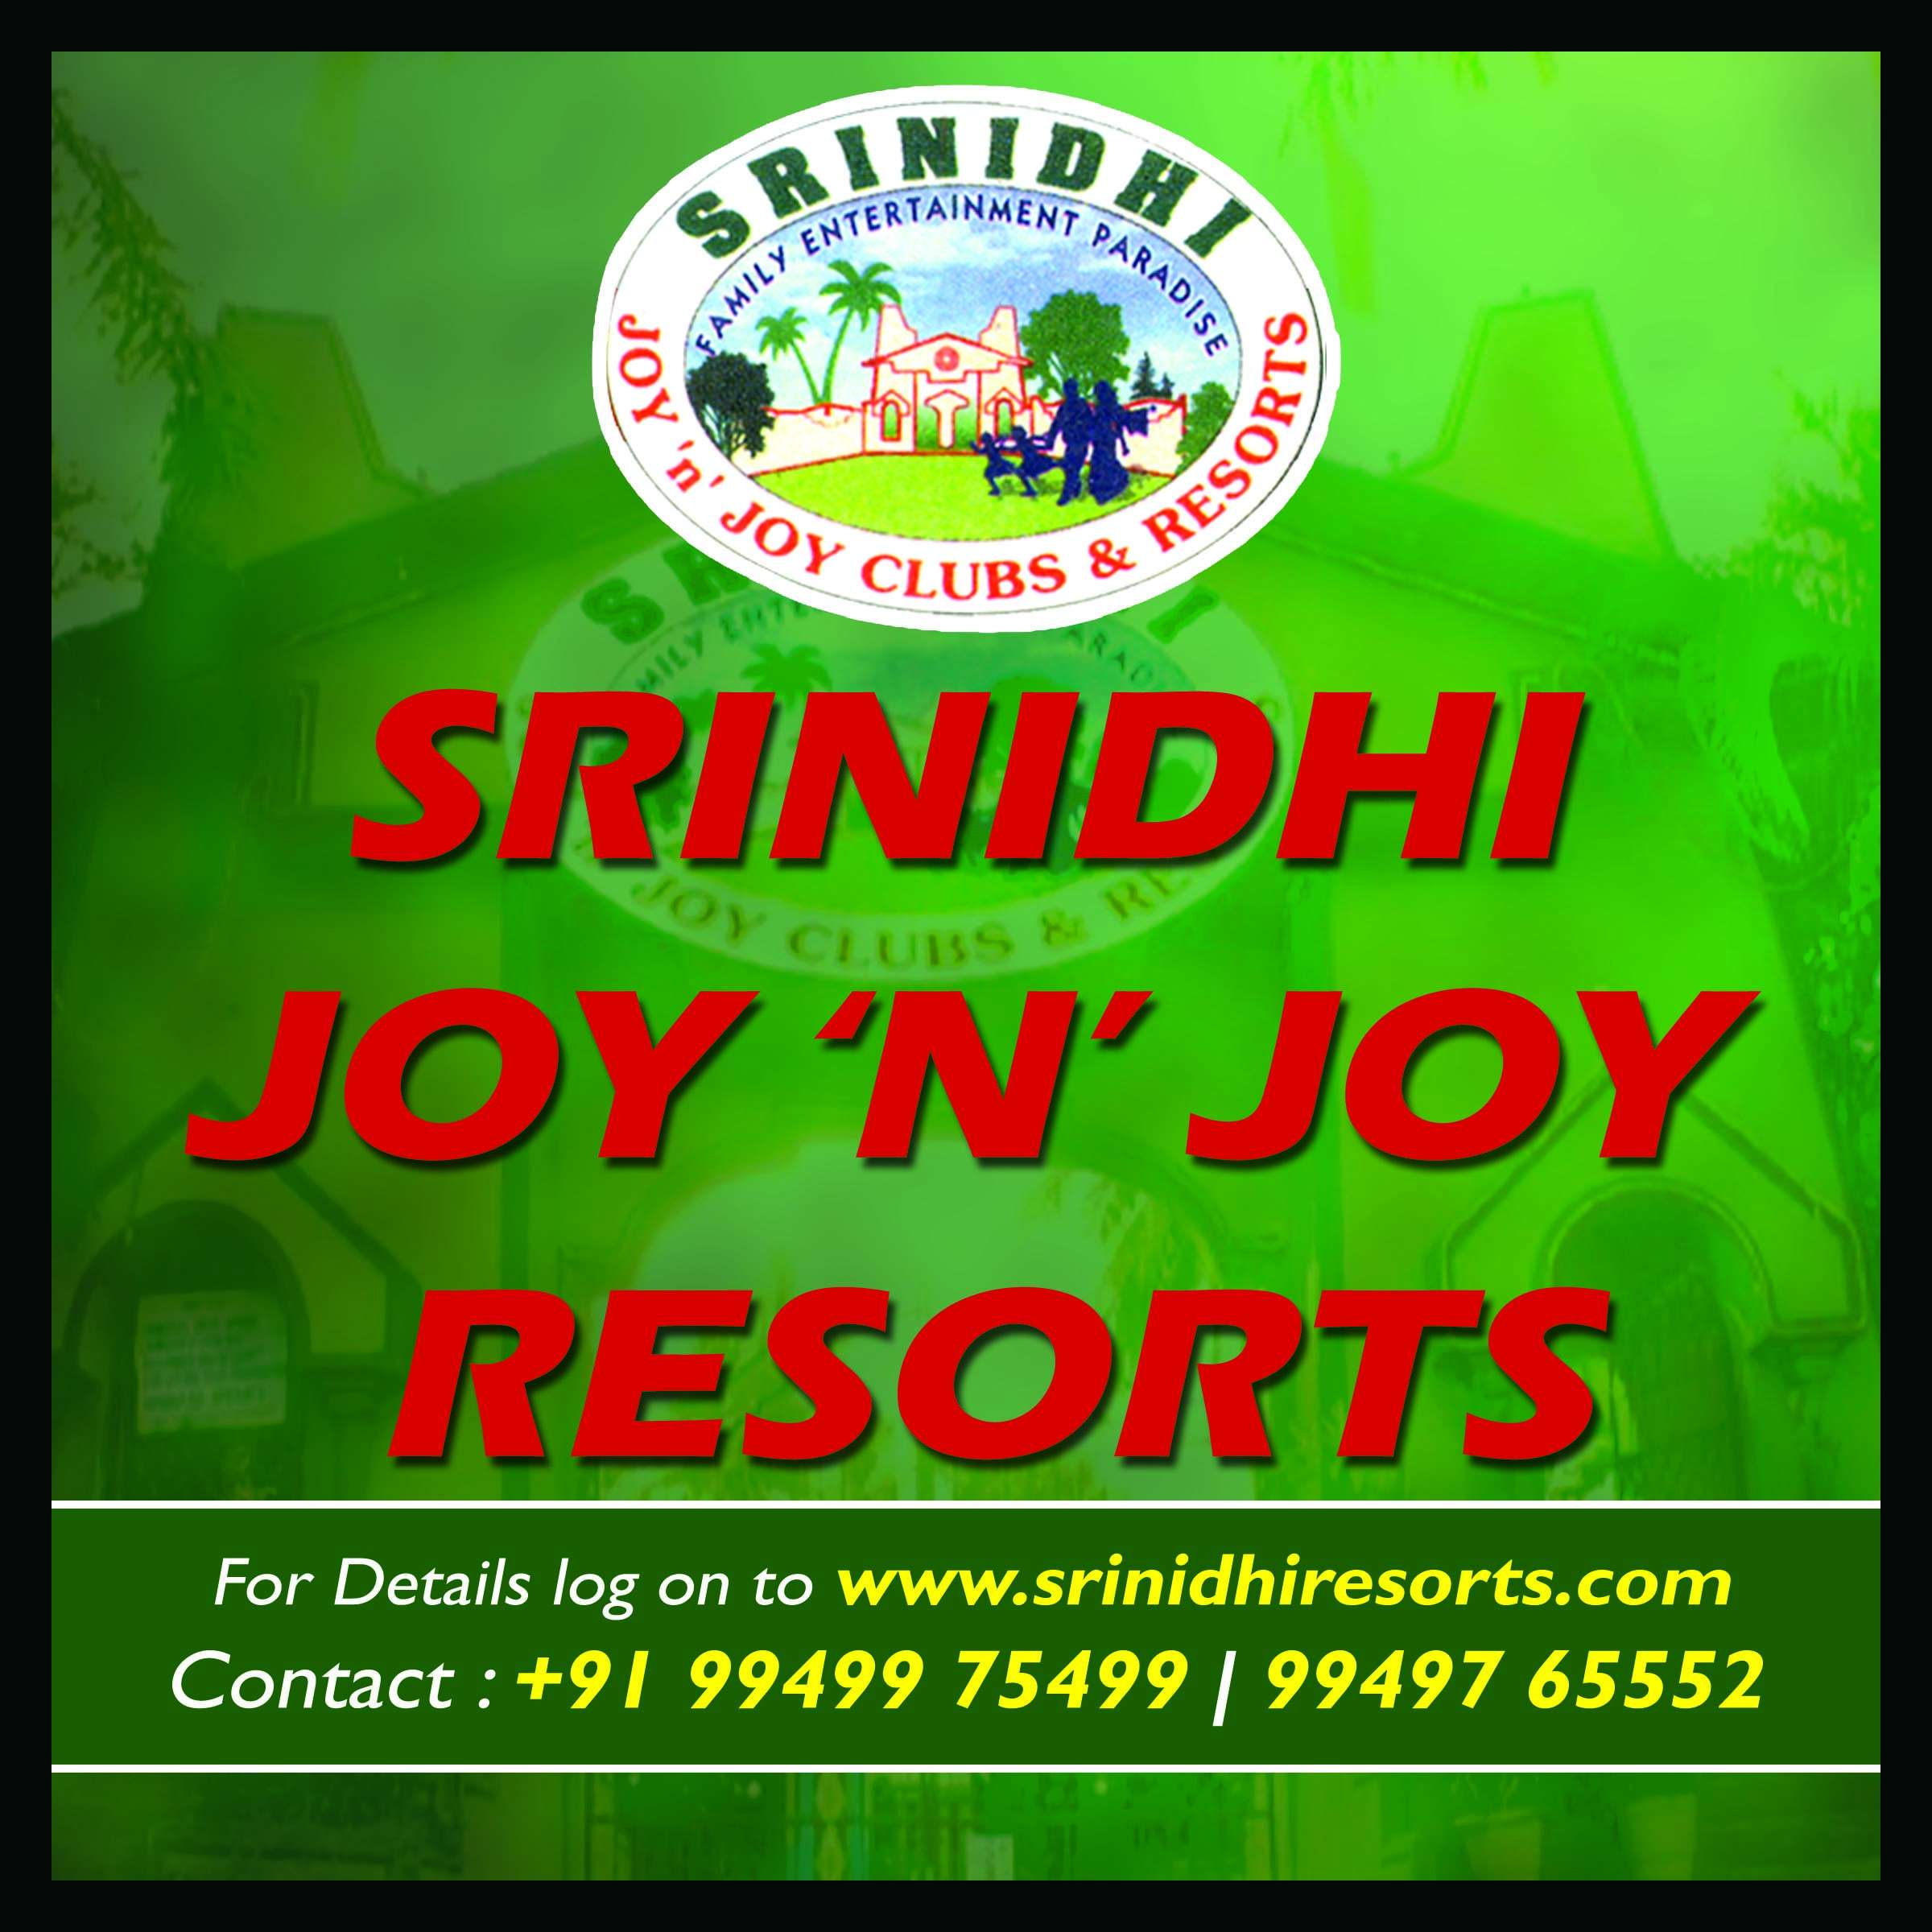 Srinidhi Joy N Joy Club & Resorts Ltd